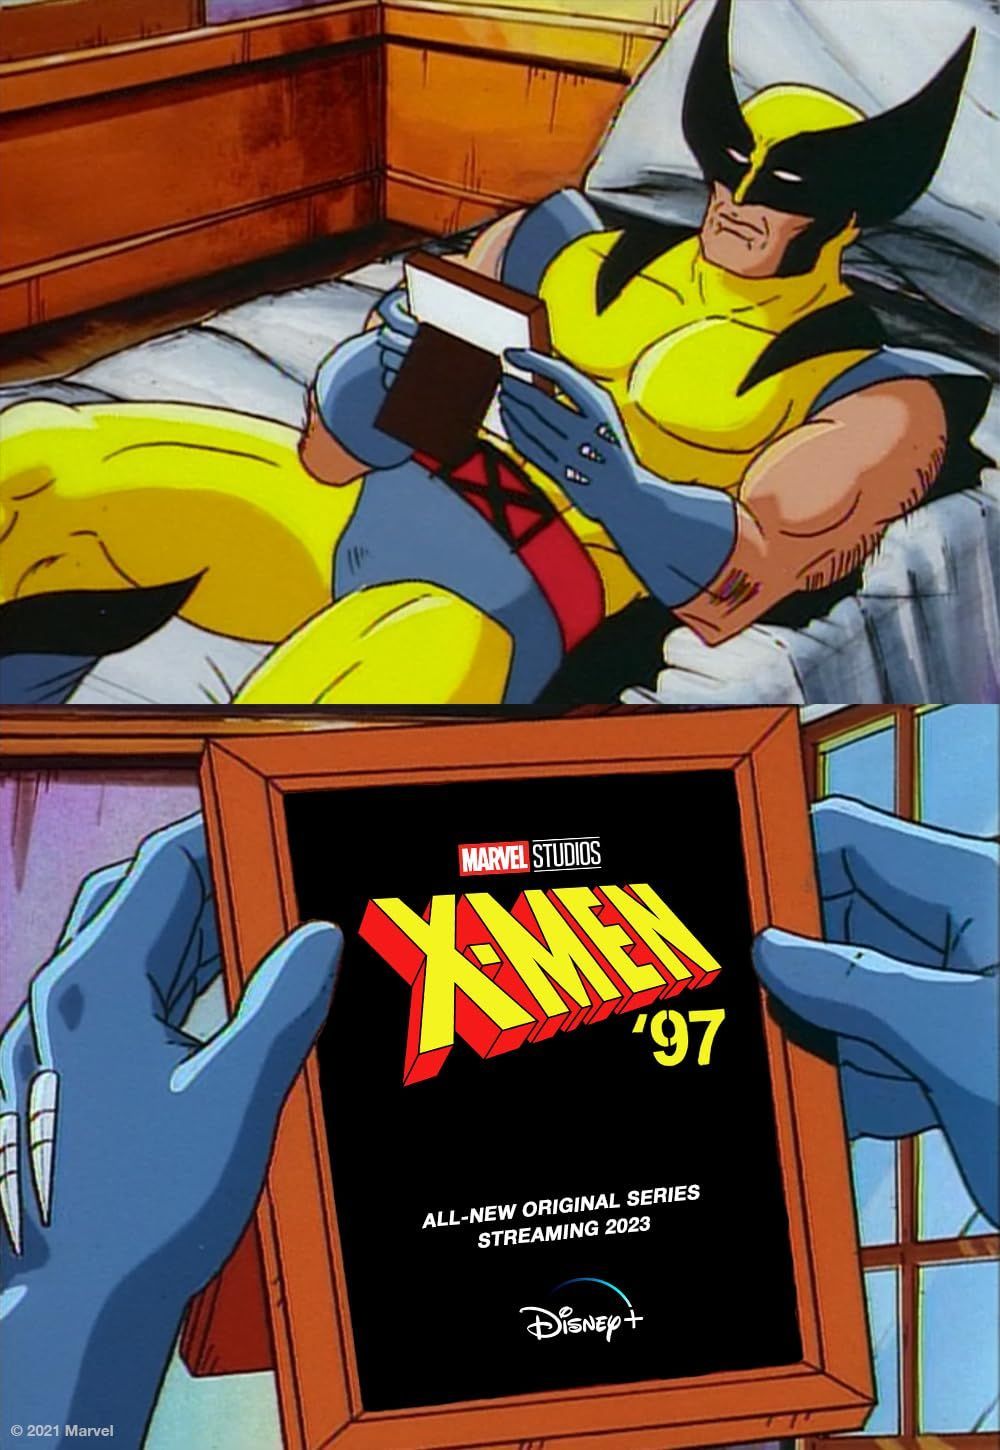 X-Men 97 (2024) Season 1 English (Episode 03) TV Series download full movie